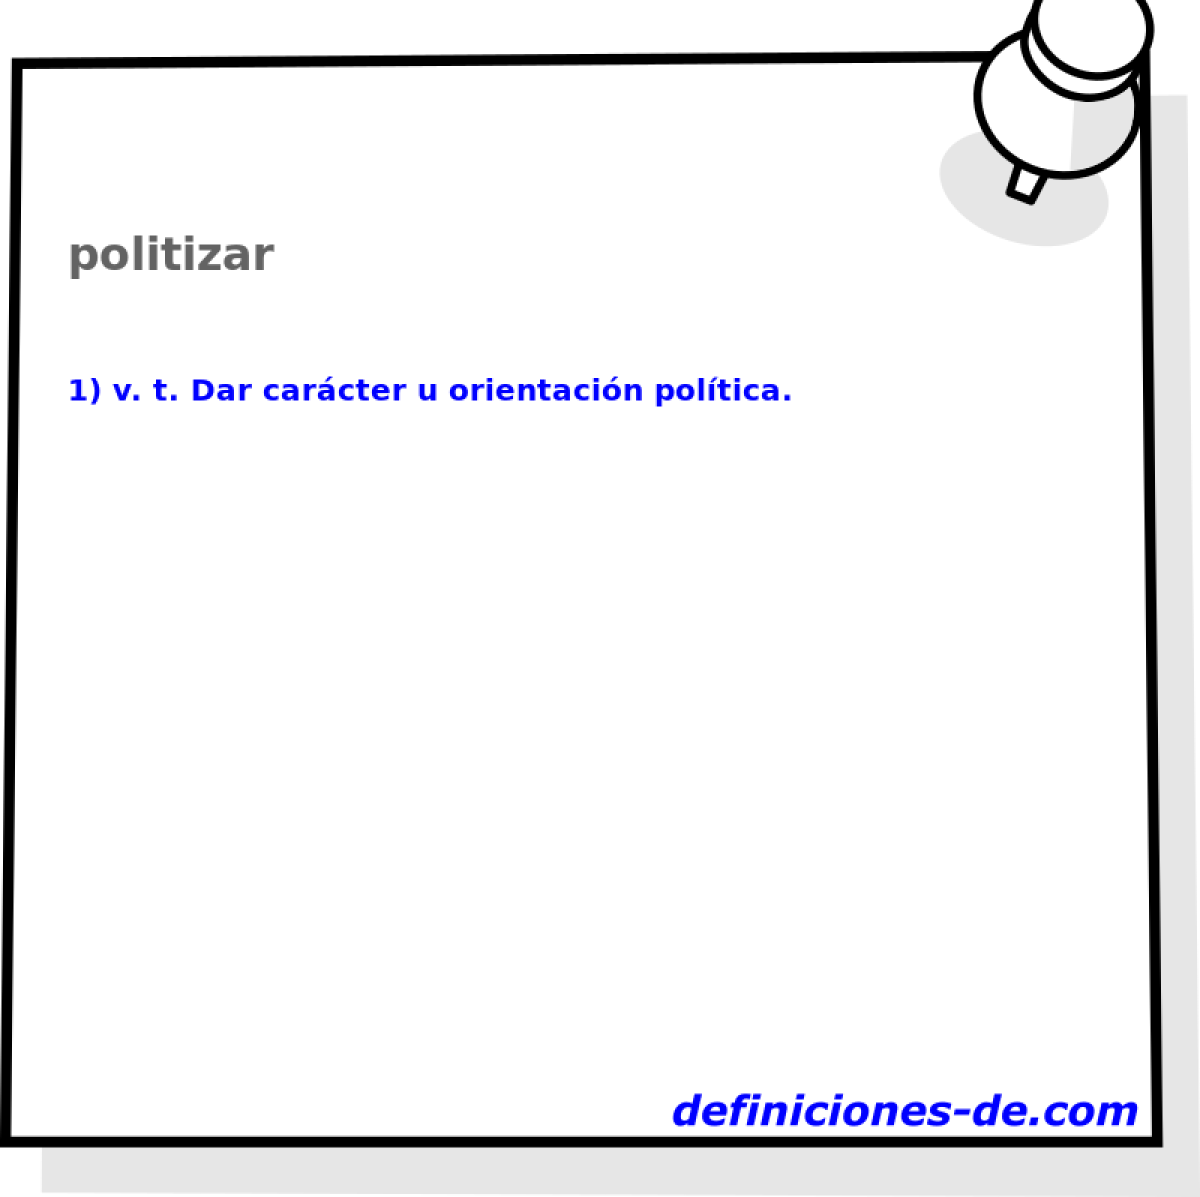 politizar 